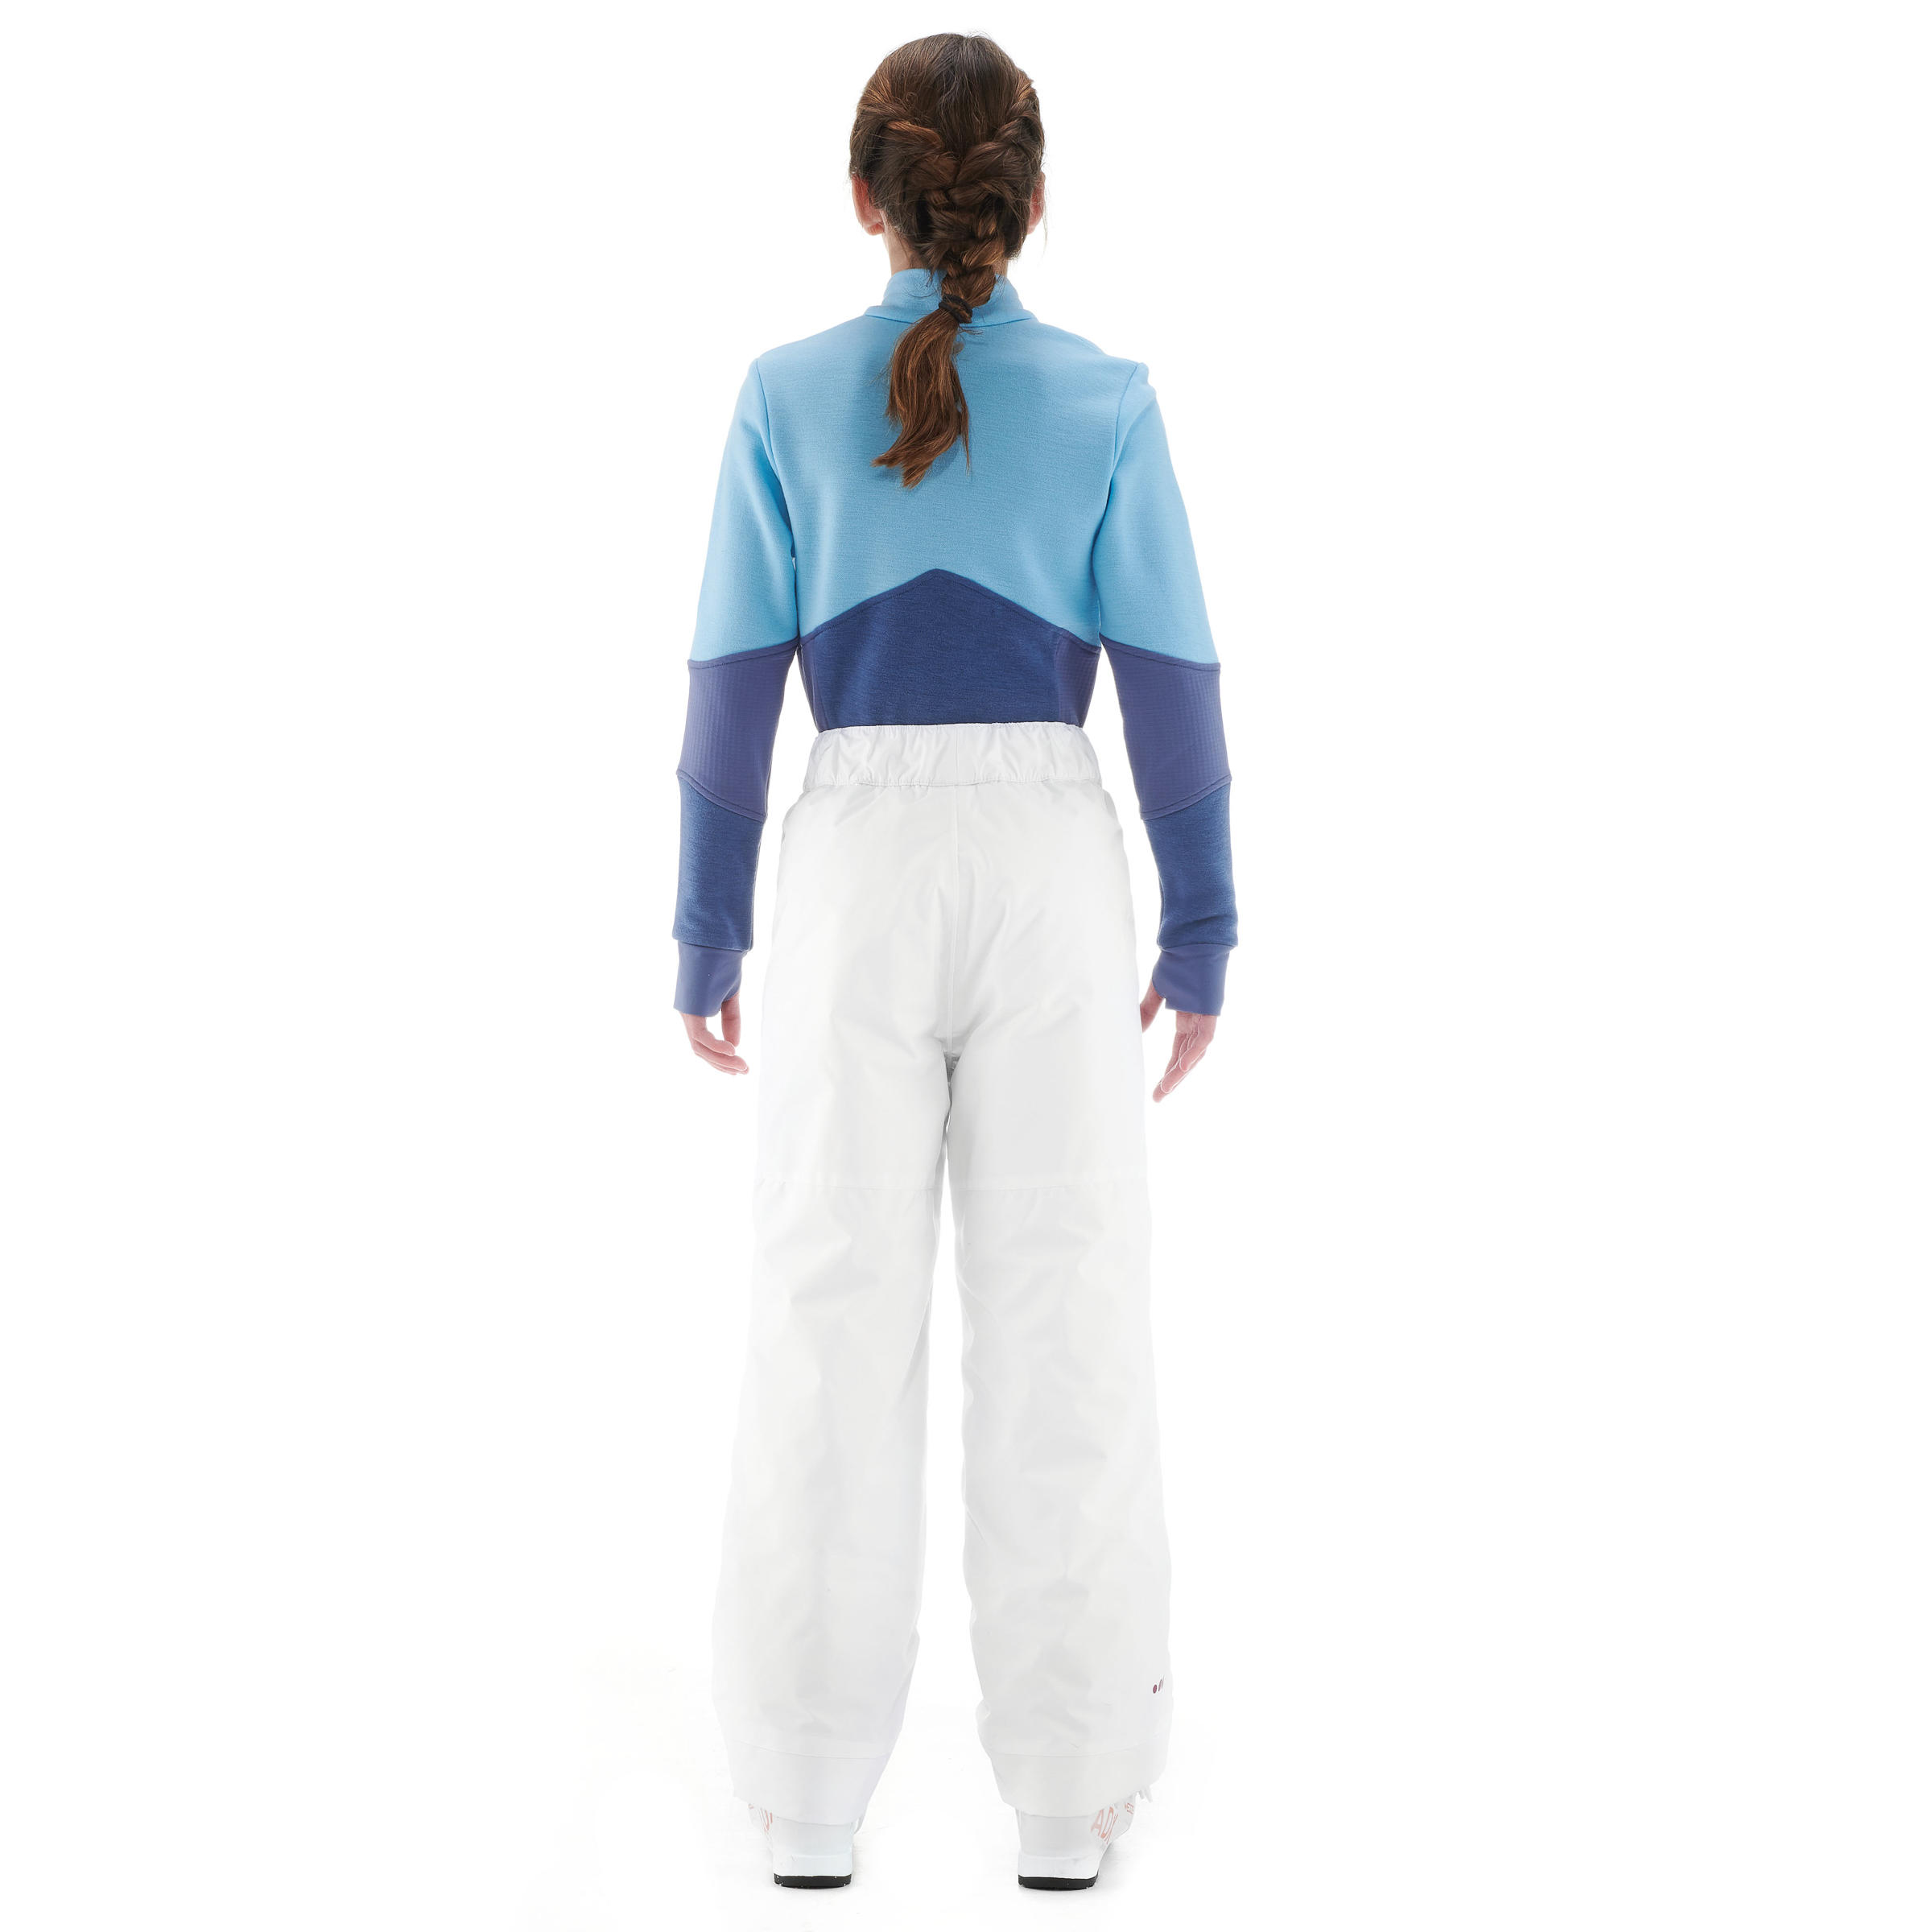 กางเกงขายาวเพื่อการเล่นสกีสำหรับเด็กรุ่น 100 (สีขาว) สกี/สโนว์บอร์ด สกี เลื่อน เสื้อผ้าเด็ก กางเกงกีฬาขายาว